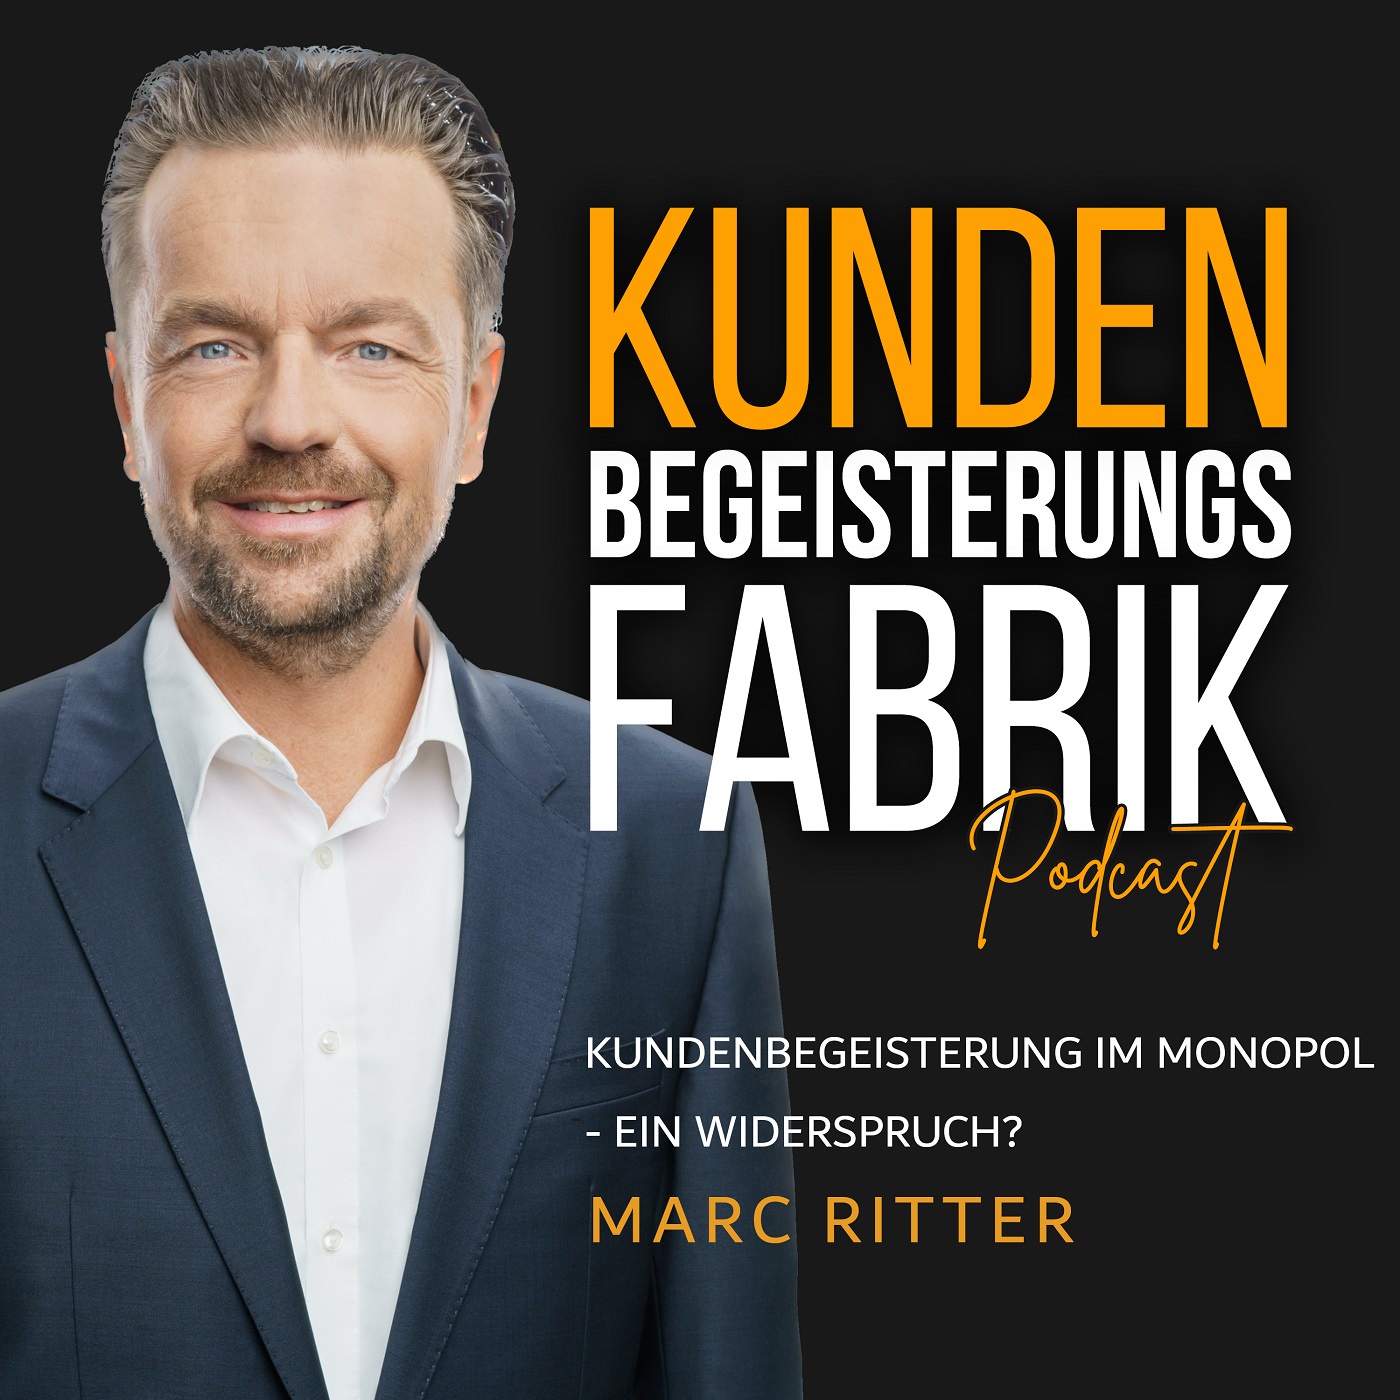 Marc Ritter: Kundenbegeisterung im Monopol - ein Widerspruch?